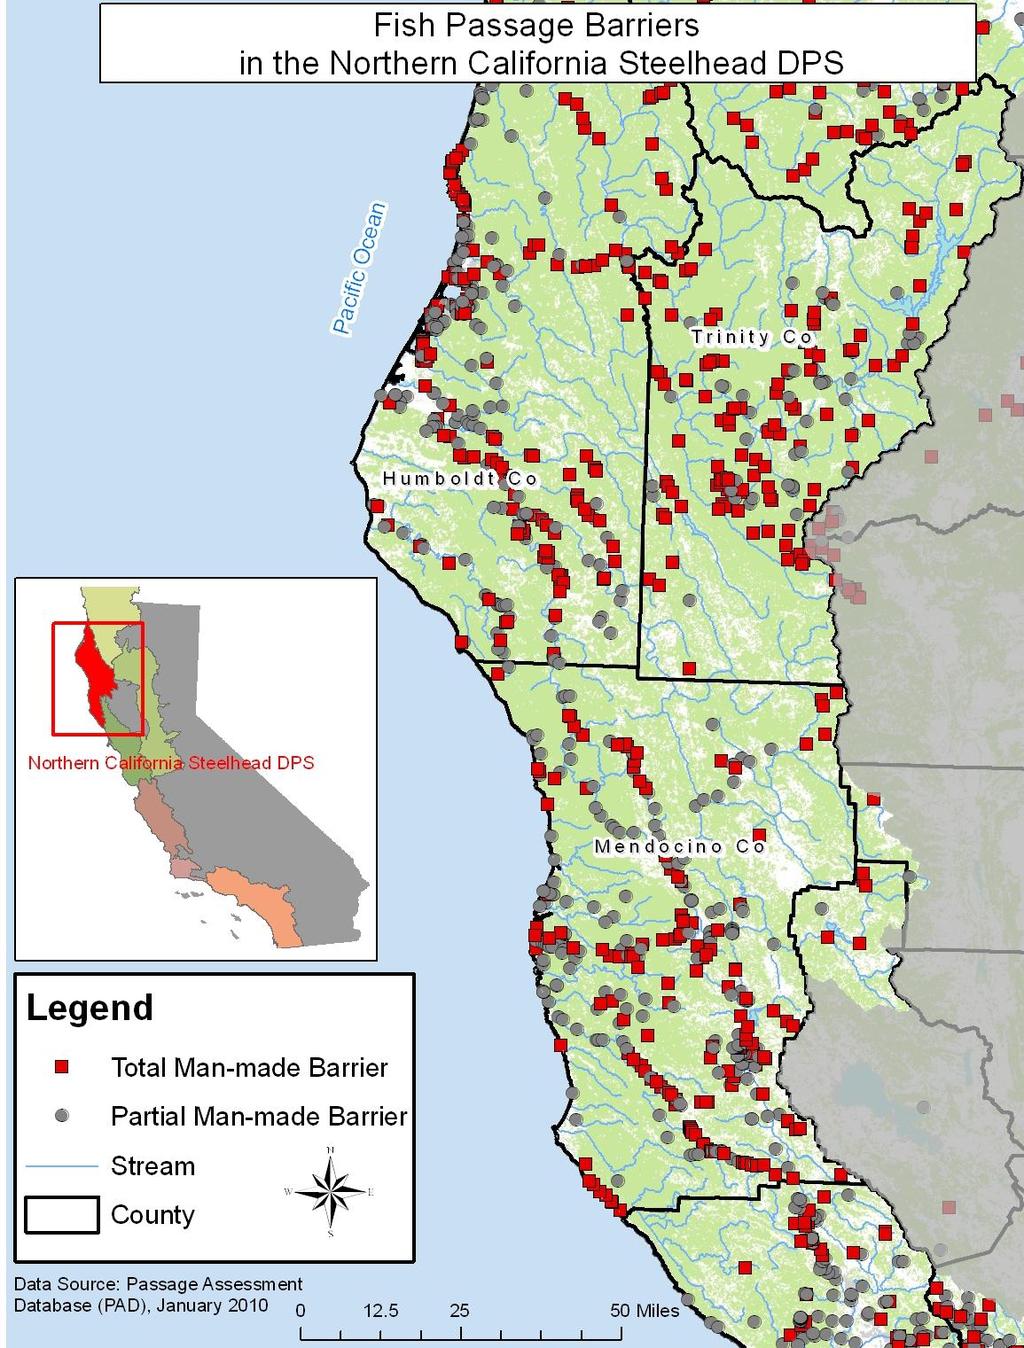 Northern California Status: Threatened (2000)